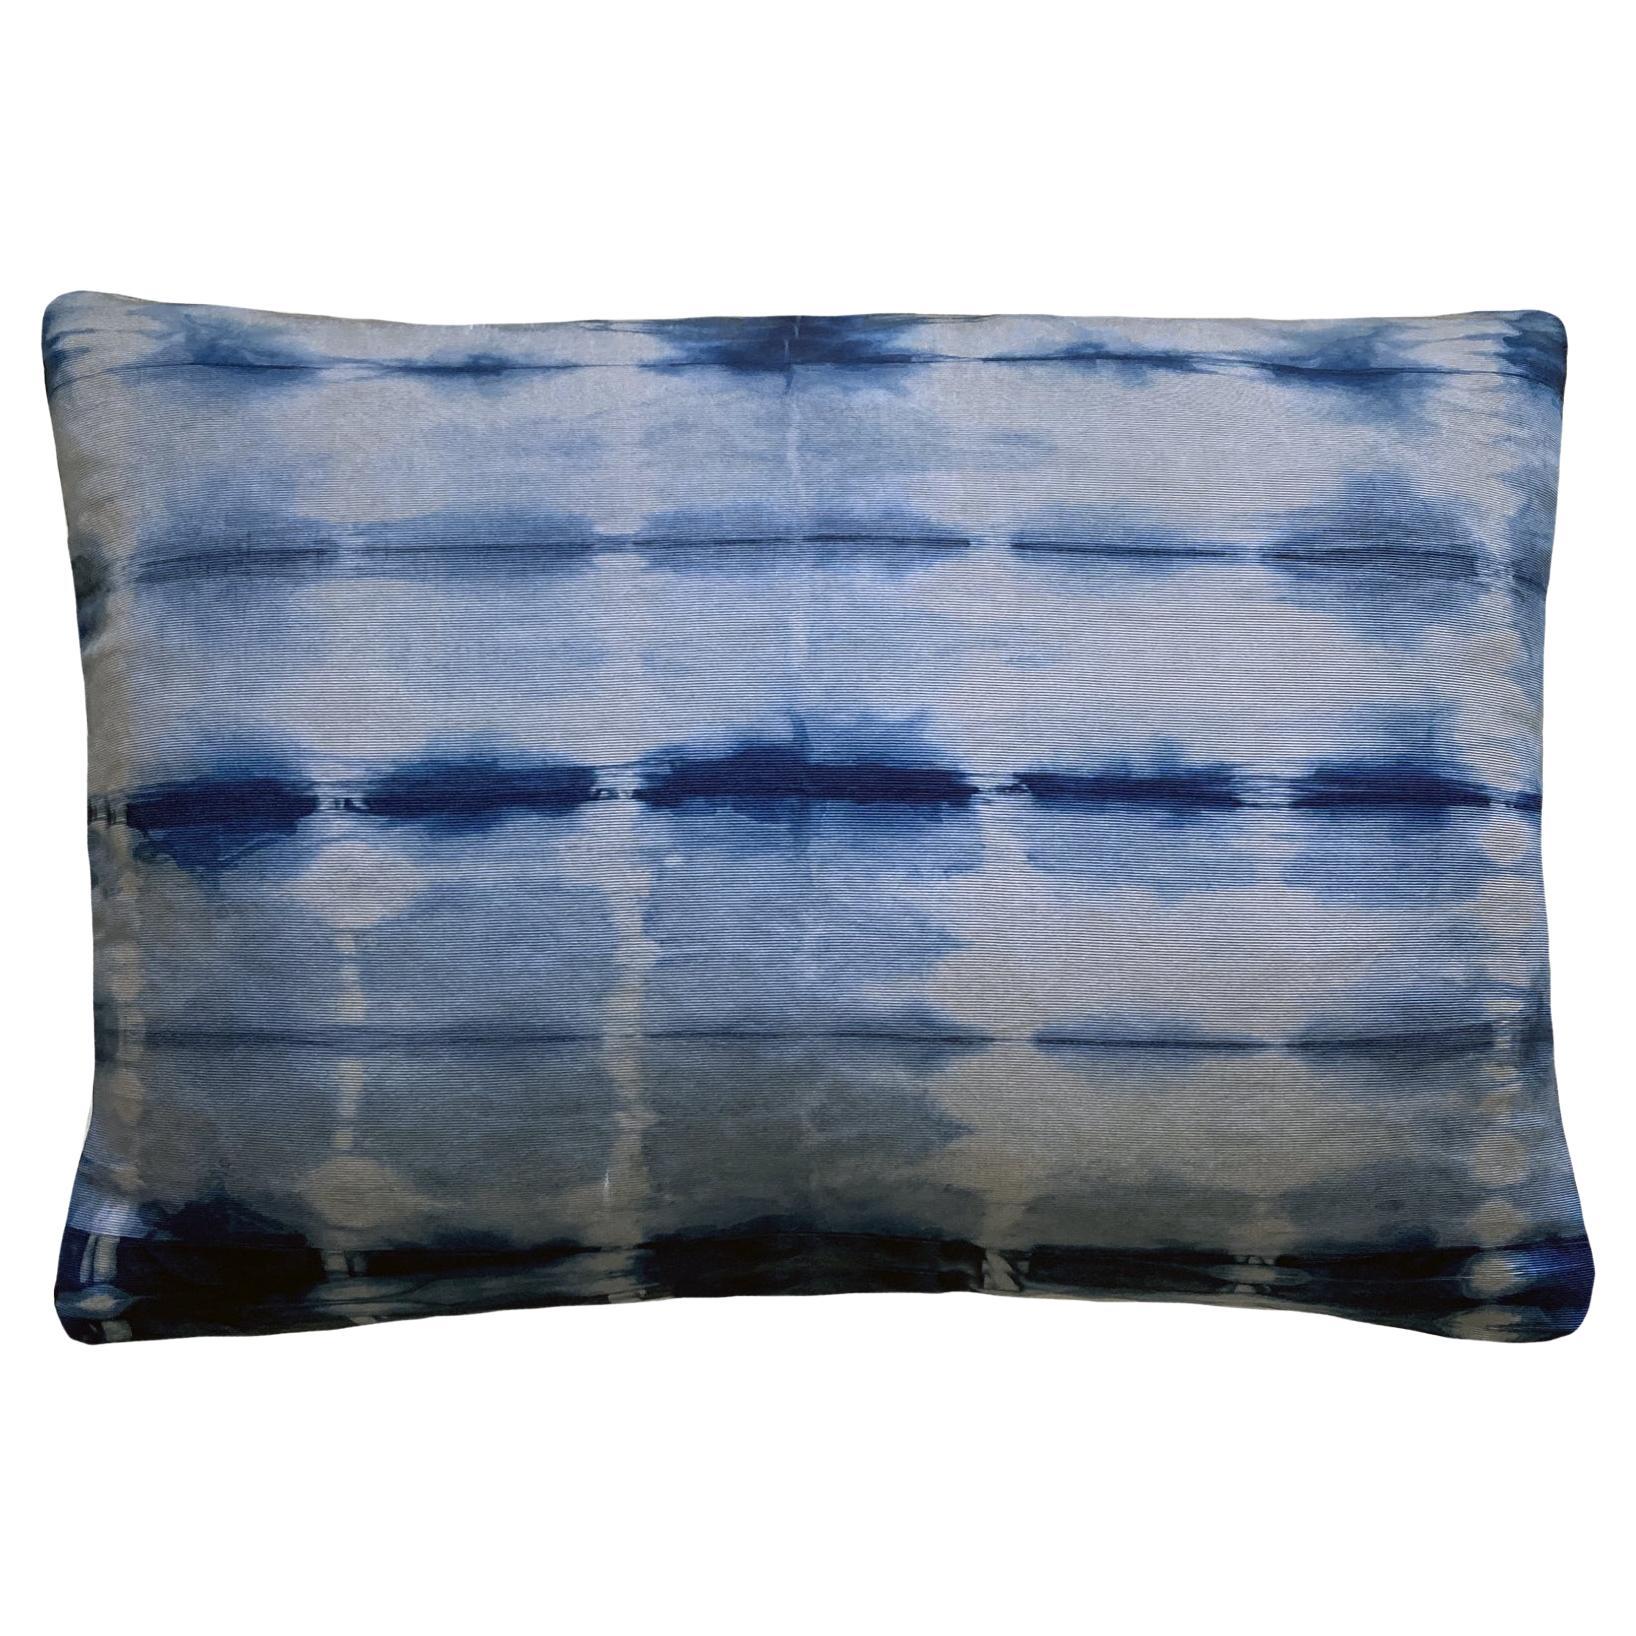 Hand Dyed Silk Pillow, Silver Gray & Indigo Blue Dash